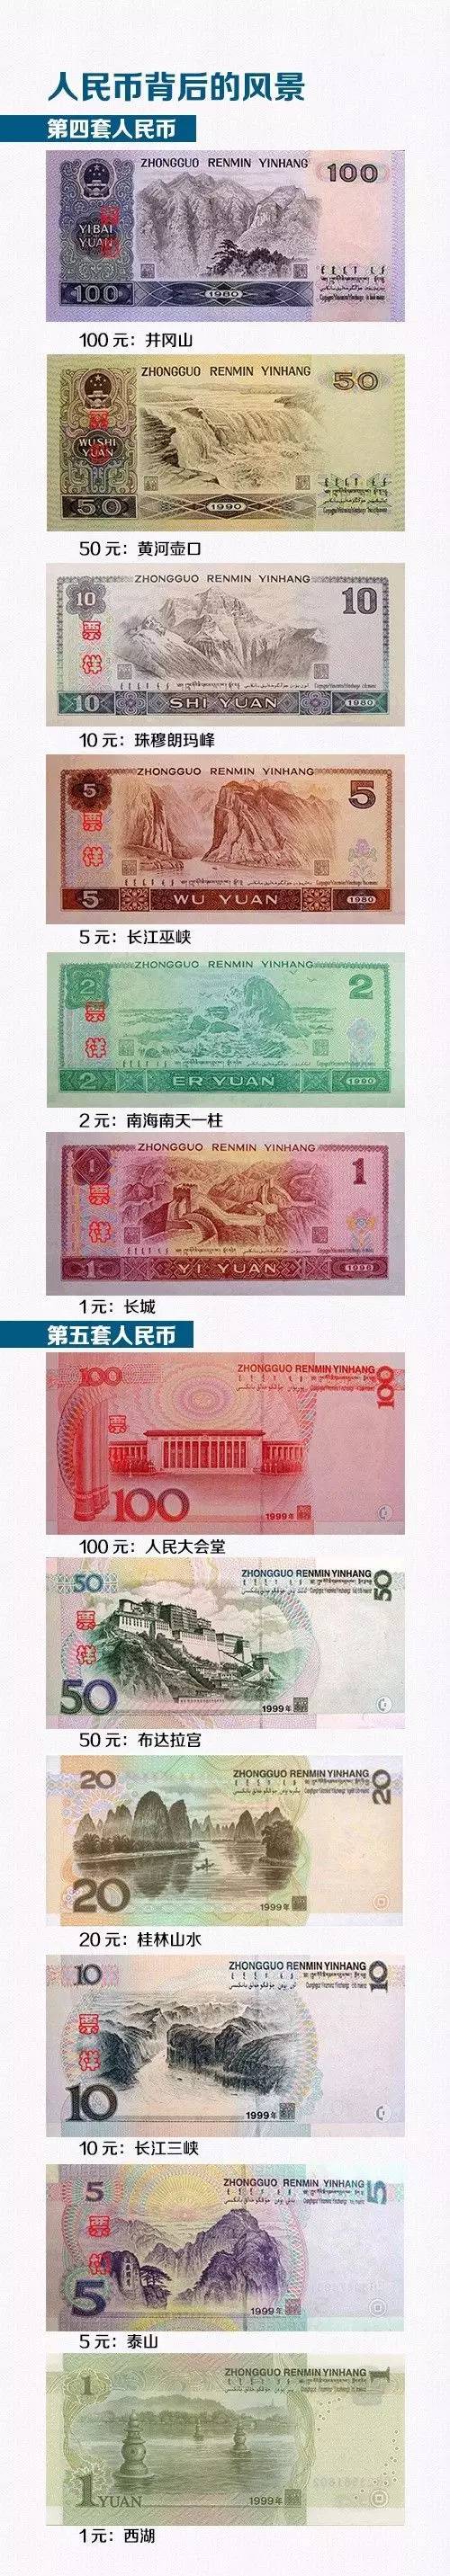 人民币的变化过程图片图片